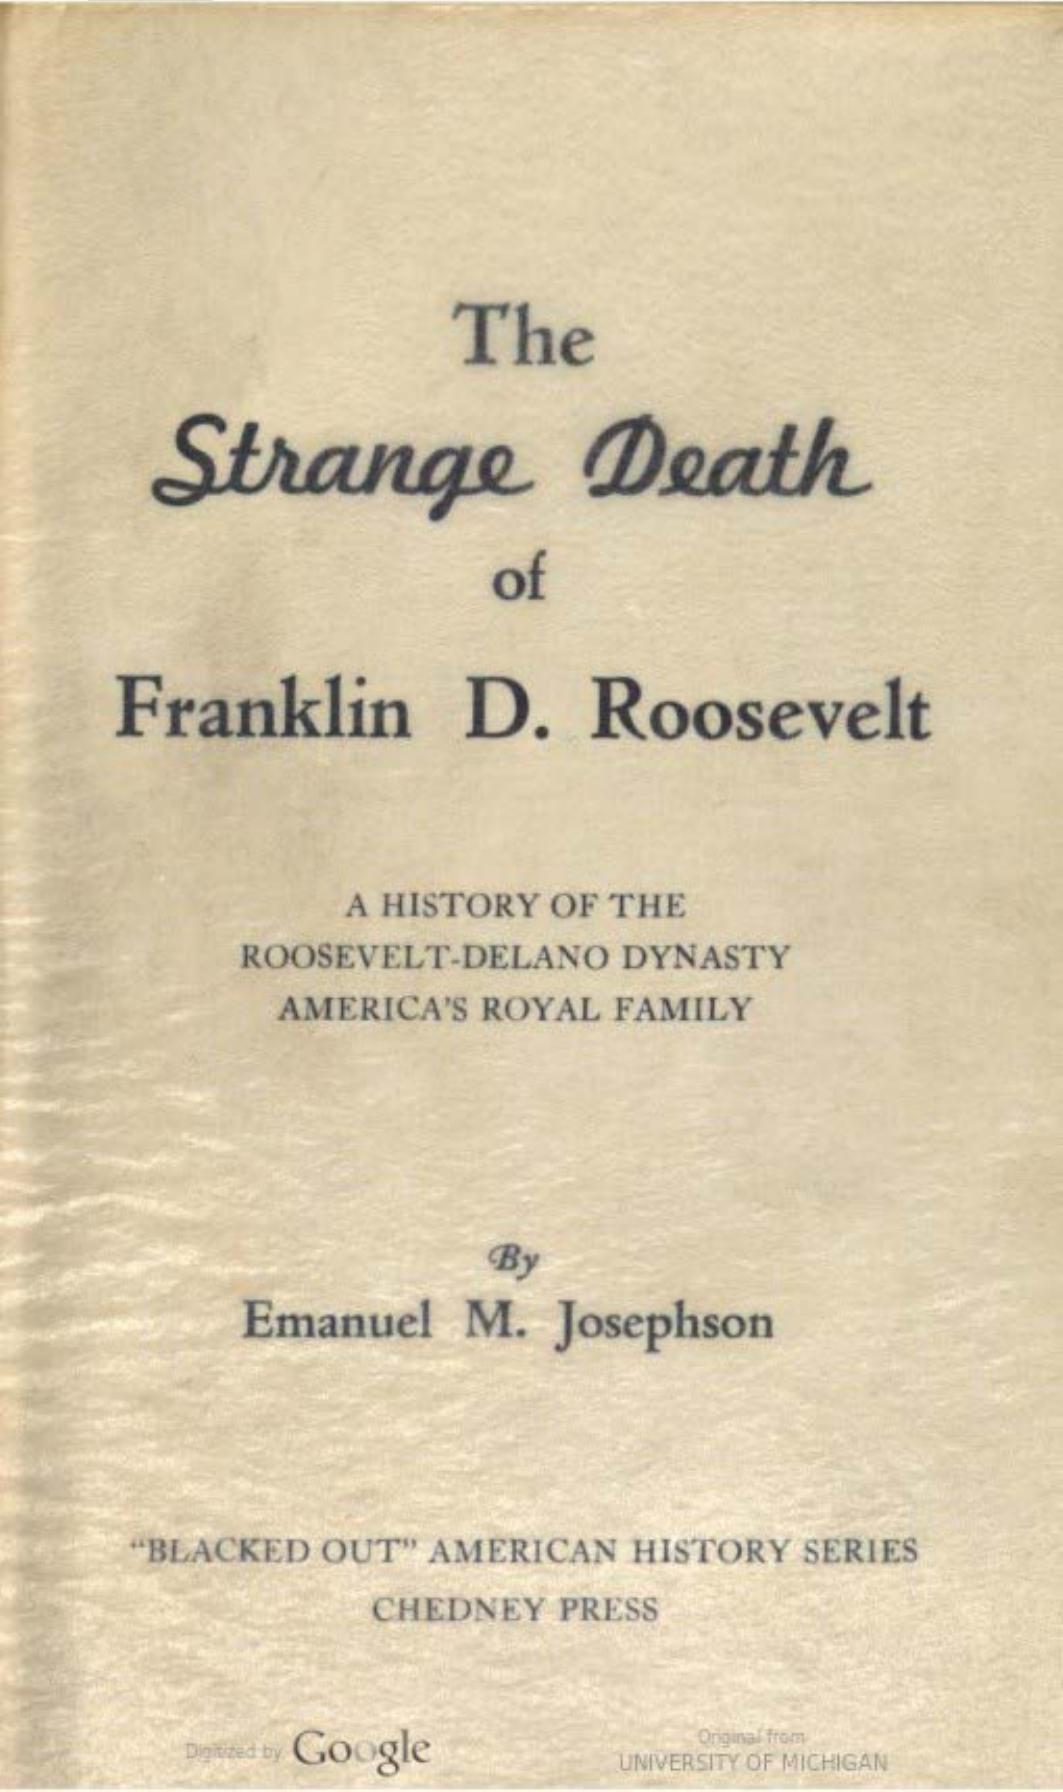 The Strange Death of Franklin D. Roosevelt (1948) by Emanuel M. Josephson